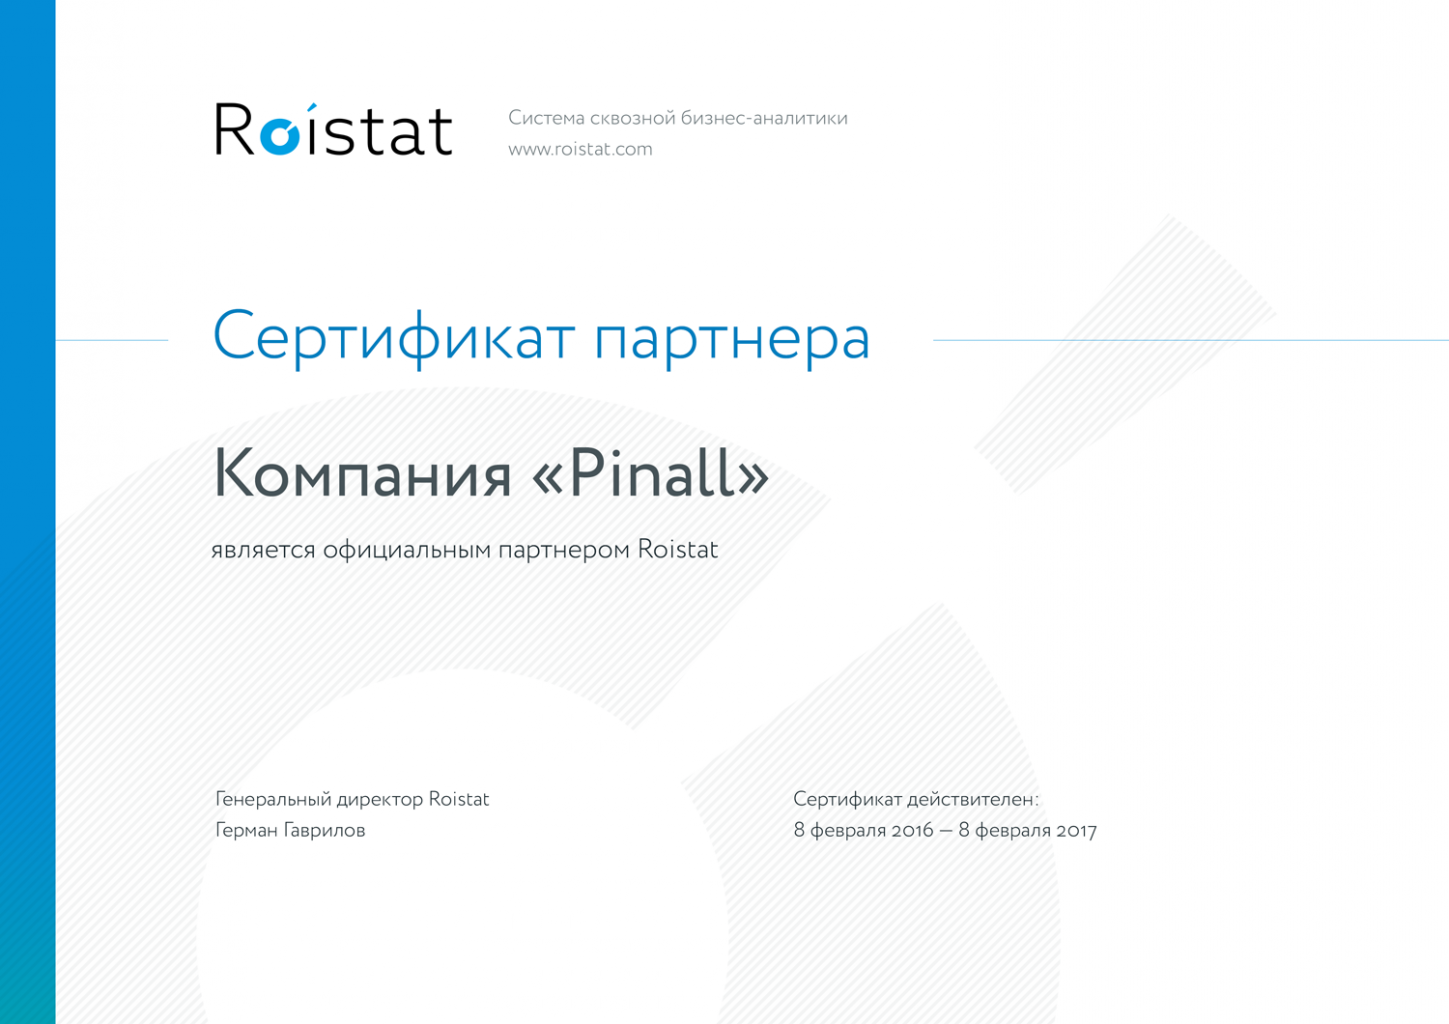 Пинол официальный партнер Roistat